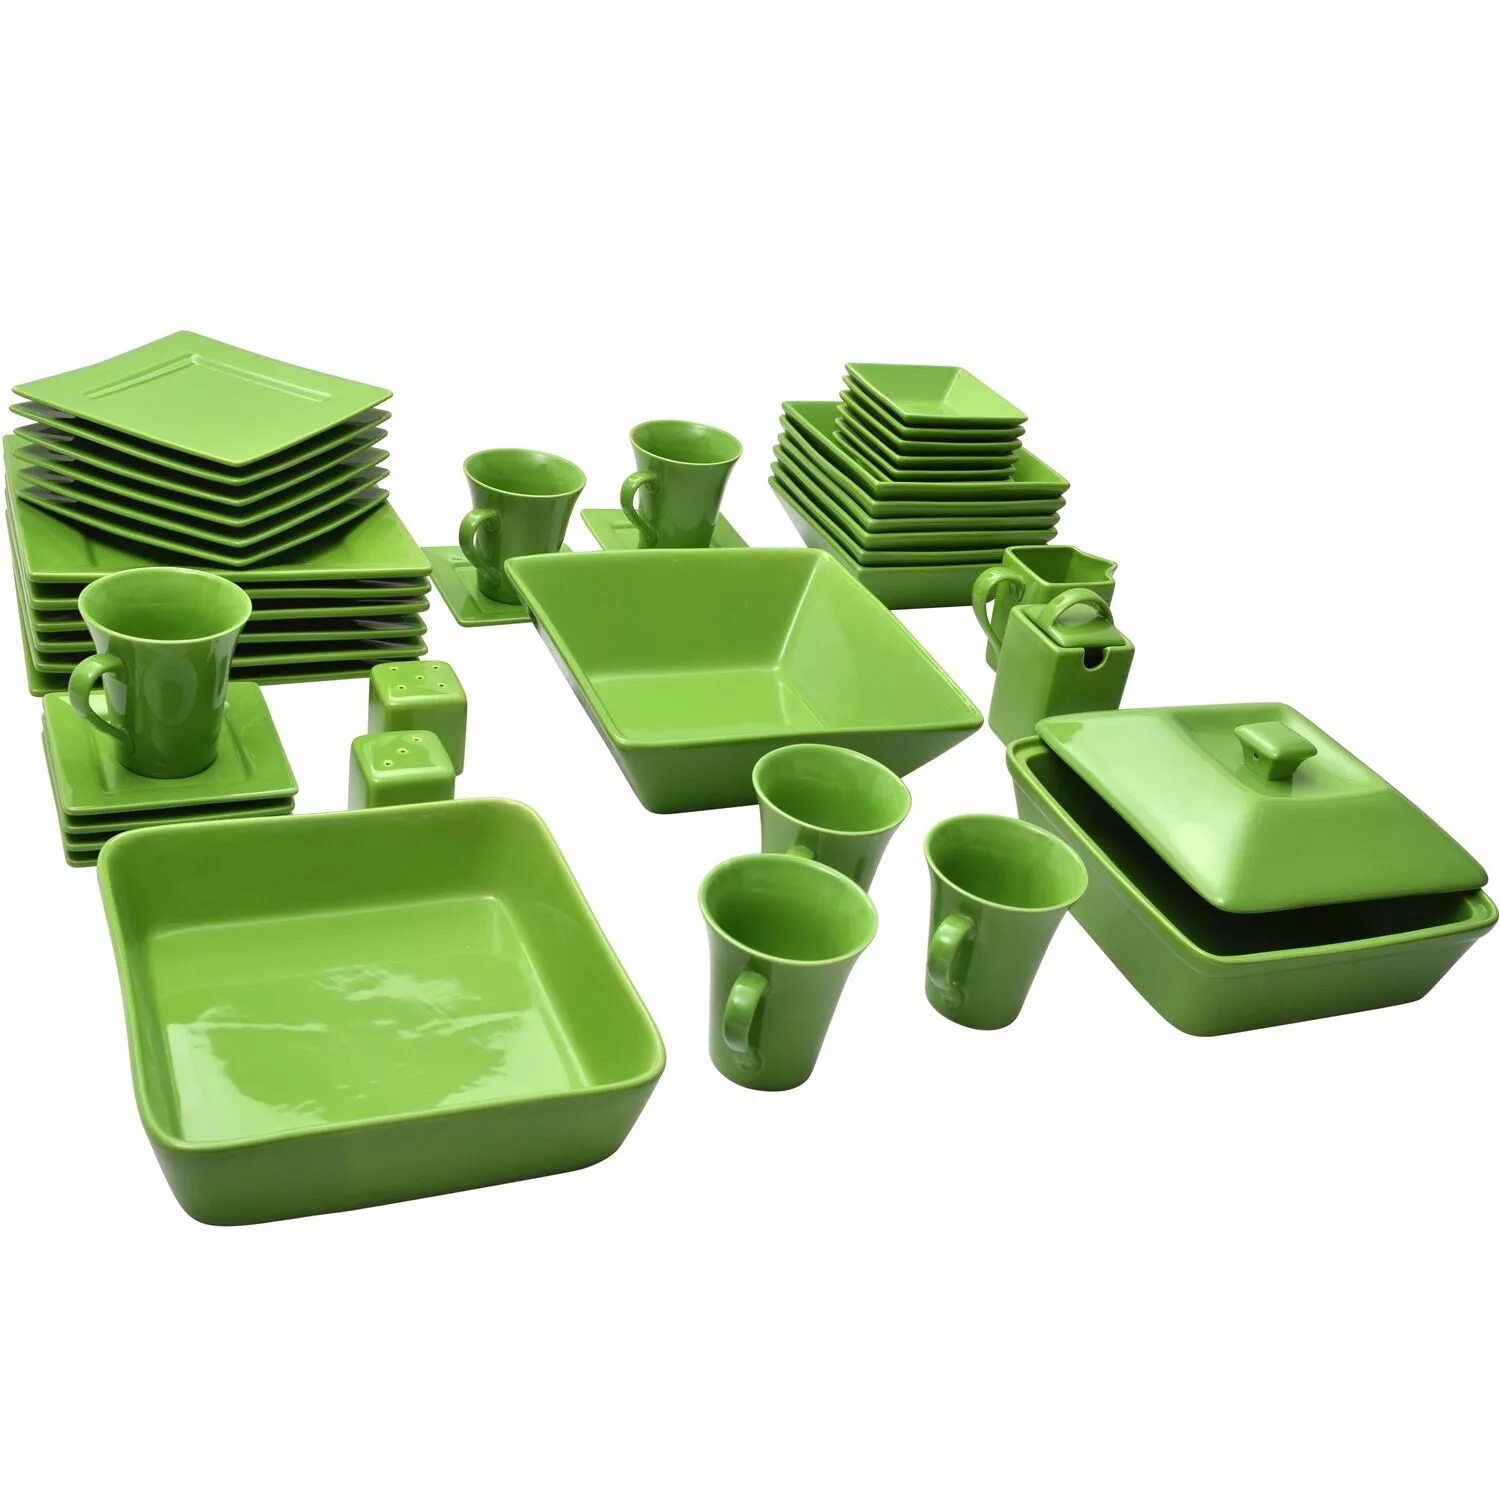 Зеленая посуда. Посуда зеленого цвета. Квадратная посуда набор. Набор посуды зеленый.